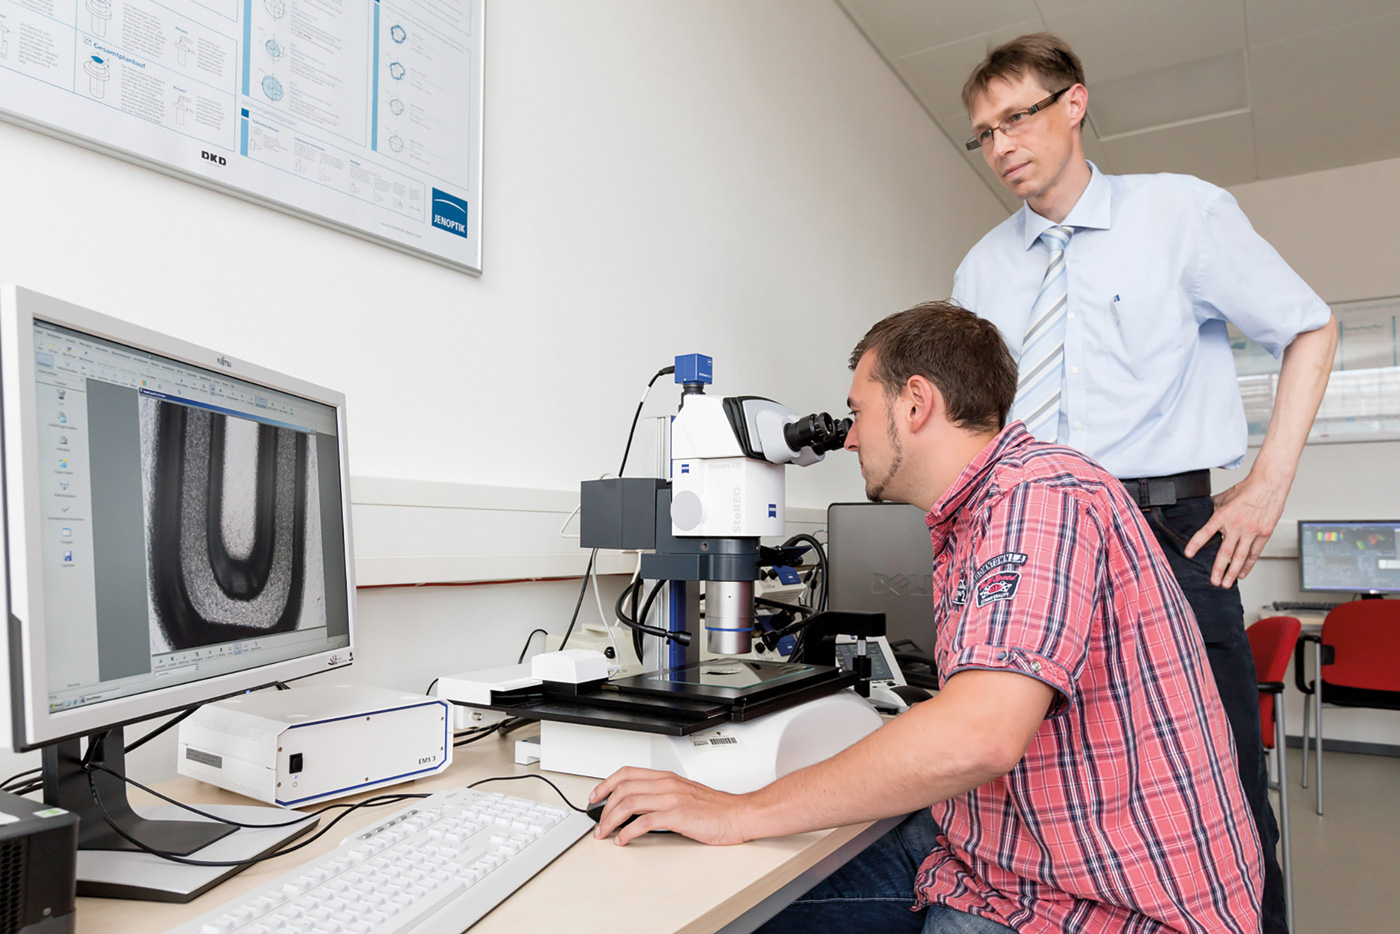 Ein Mann guckt in ein Miskroskop, links von ihm steht ein Bildschirm auf dem das Mikroskopbild zu sehen ist,hinter ihm steht ein Mann und guckt auf den Bildschirm